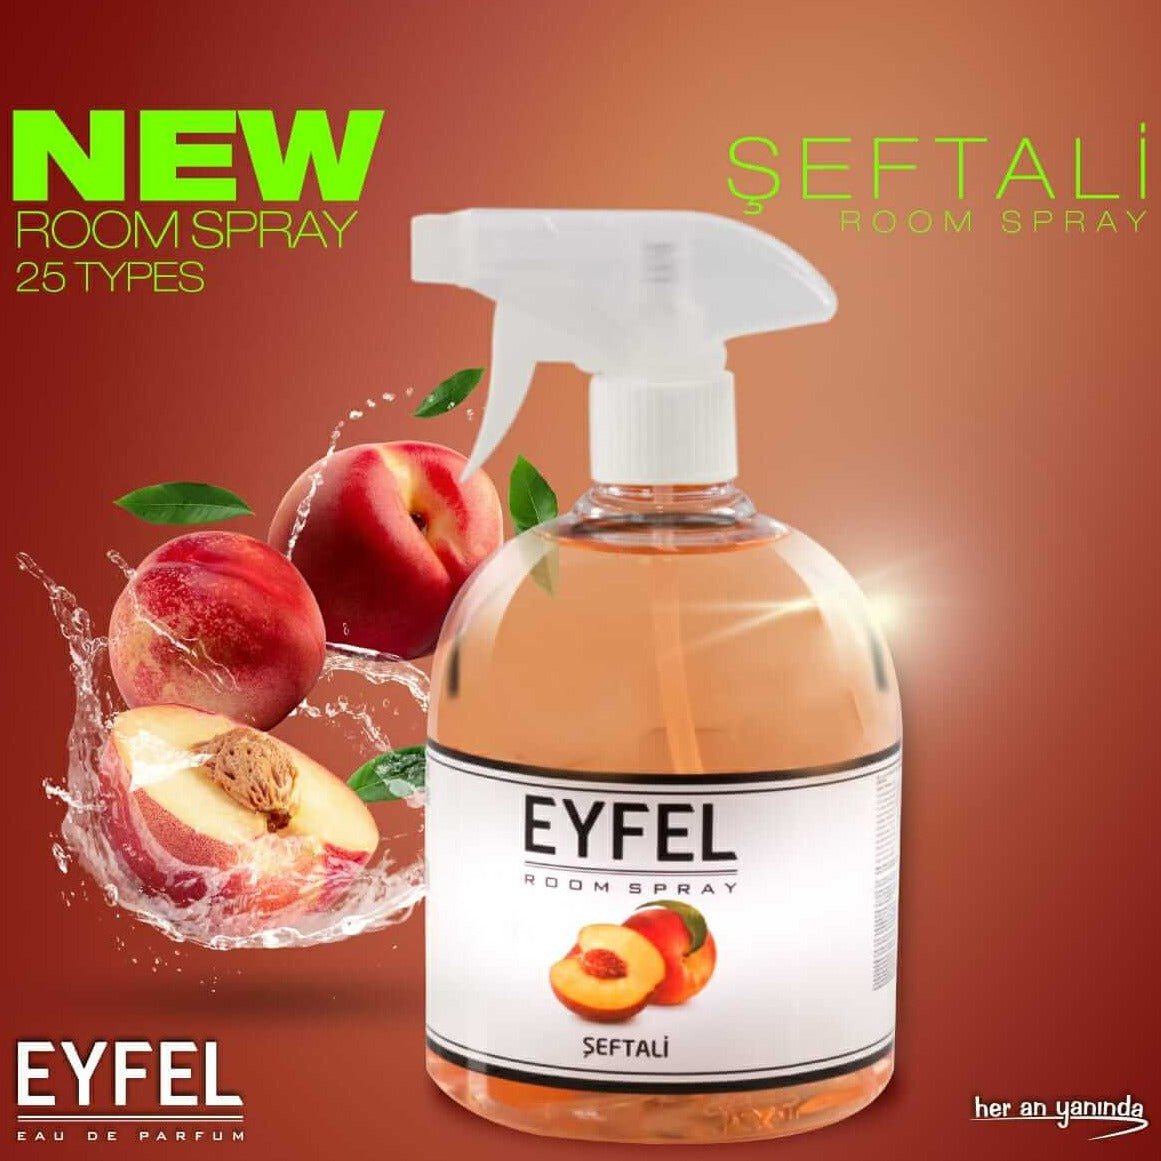 EYFEL Room Spray - 500ml